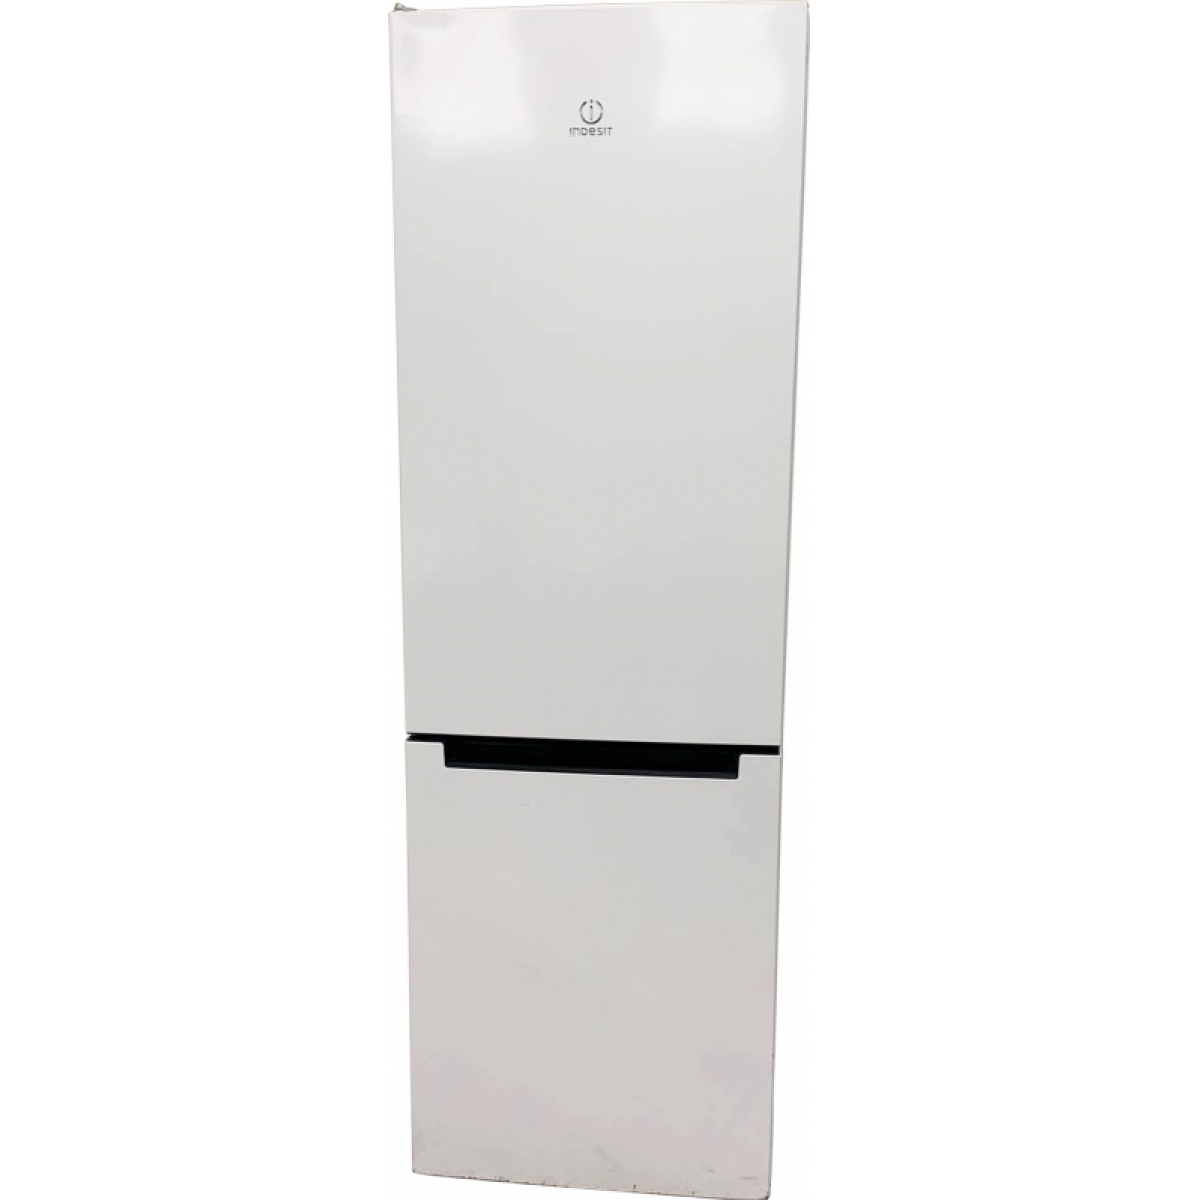 Холодильник Indesit с вырезанной стенкой в аренду